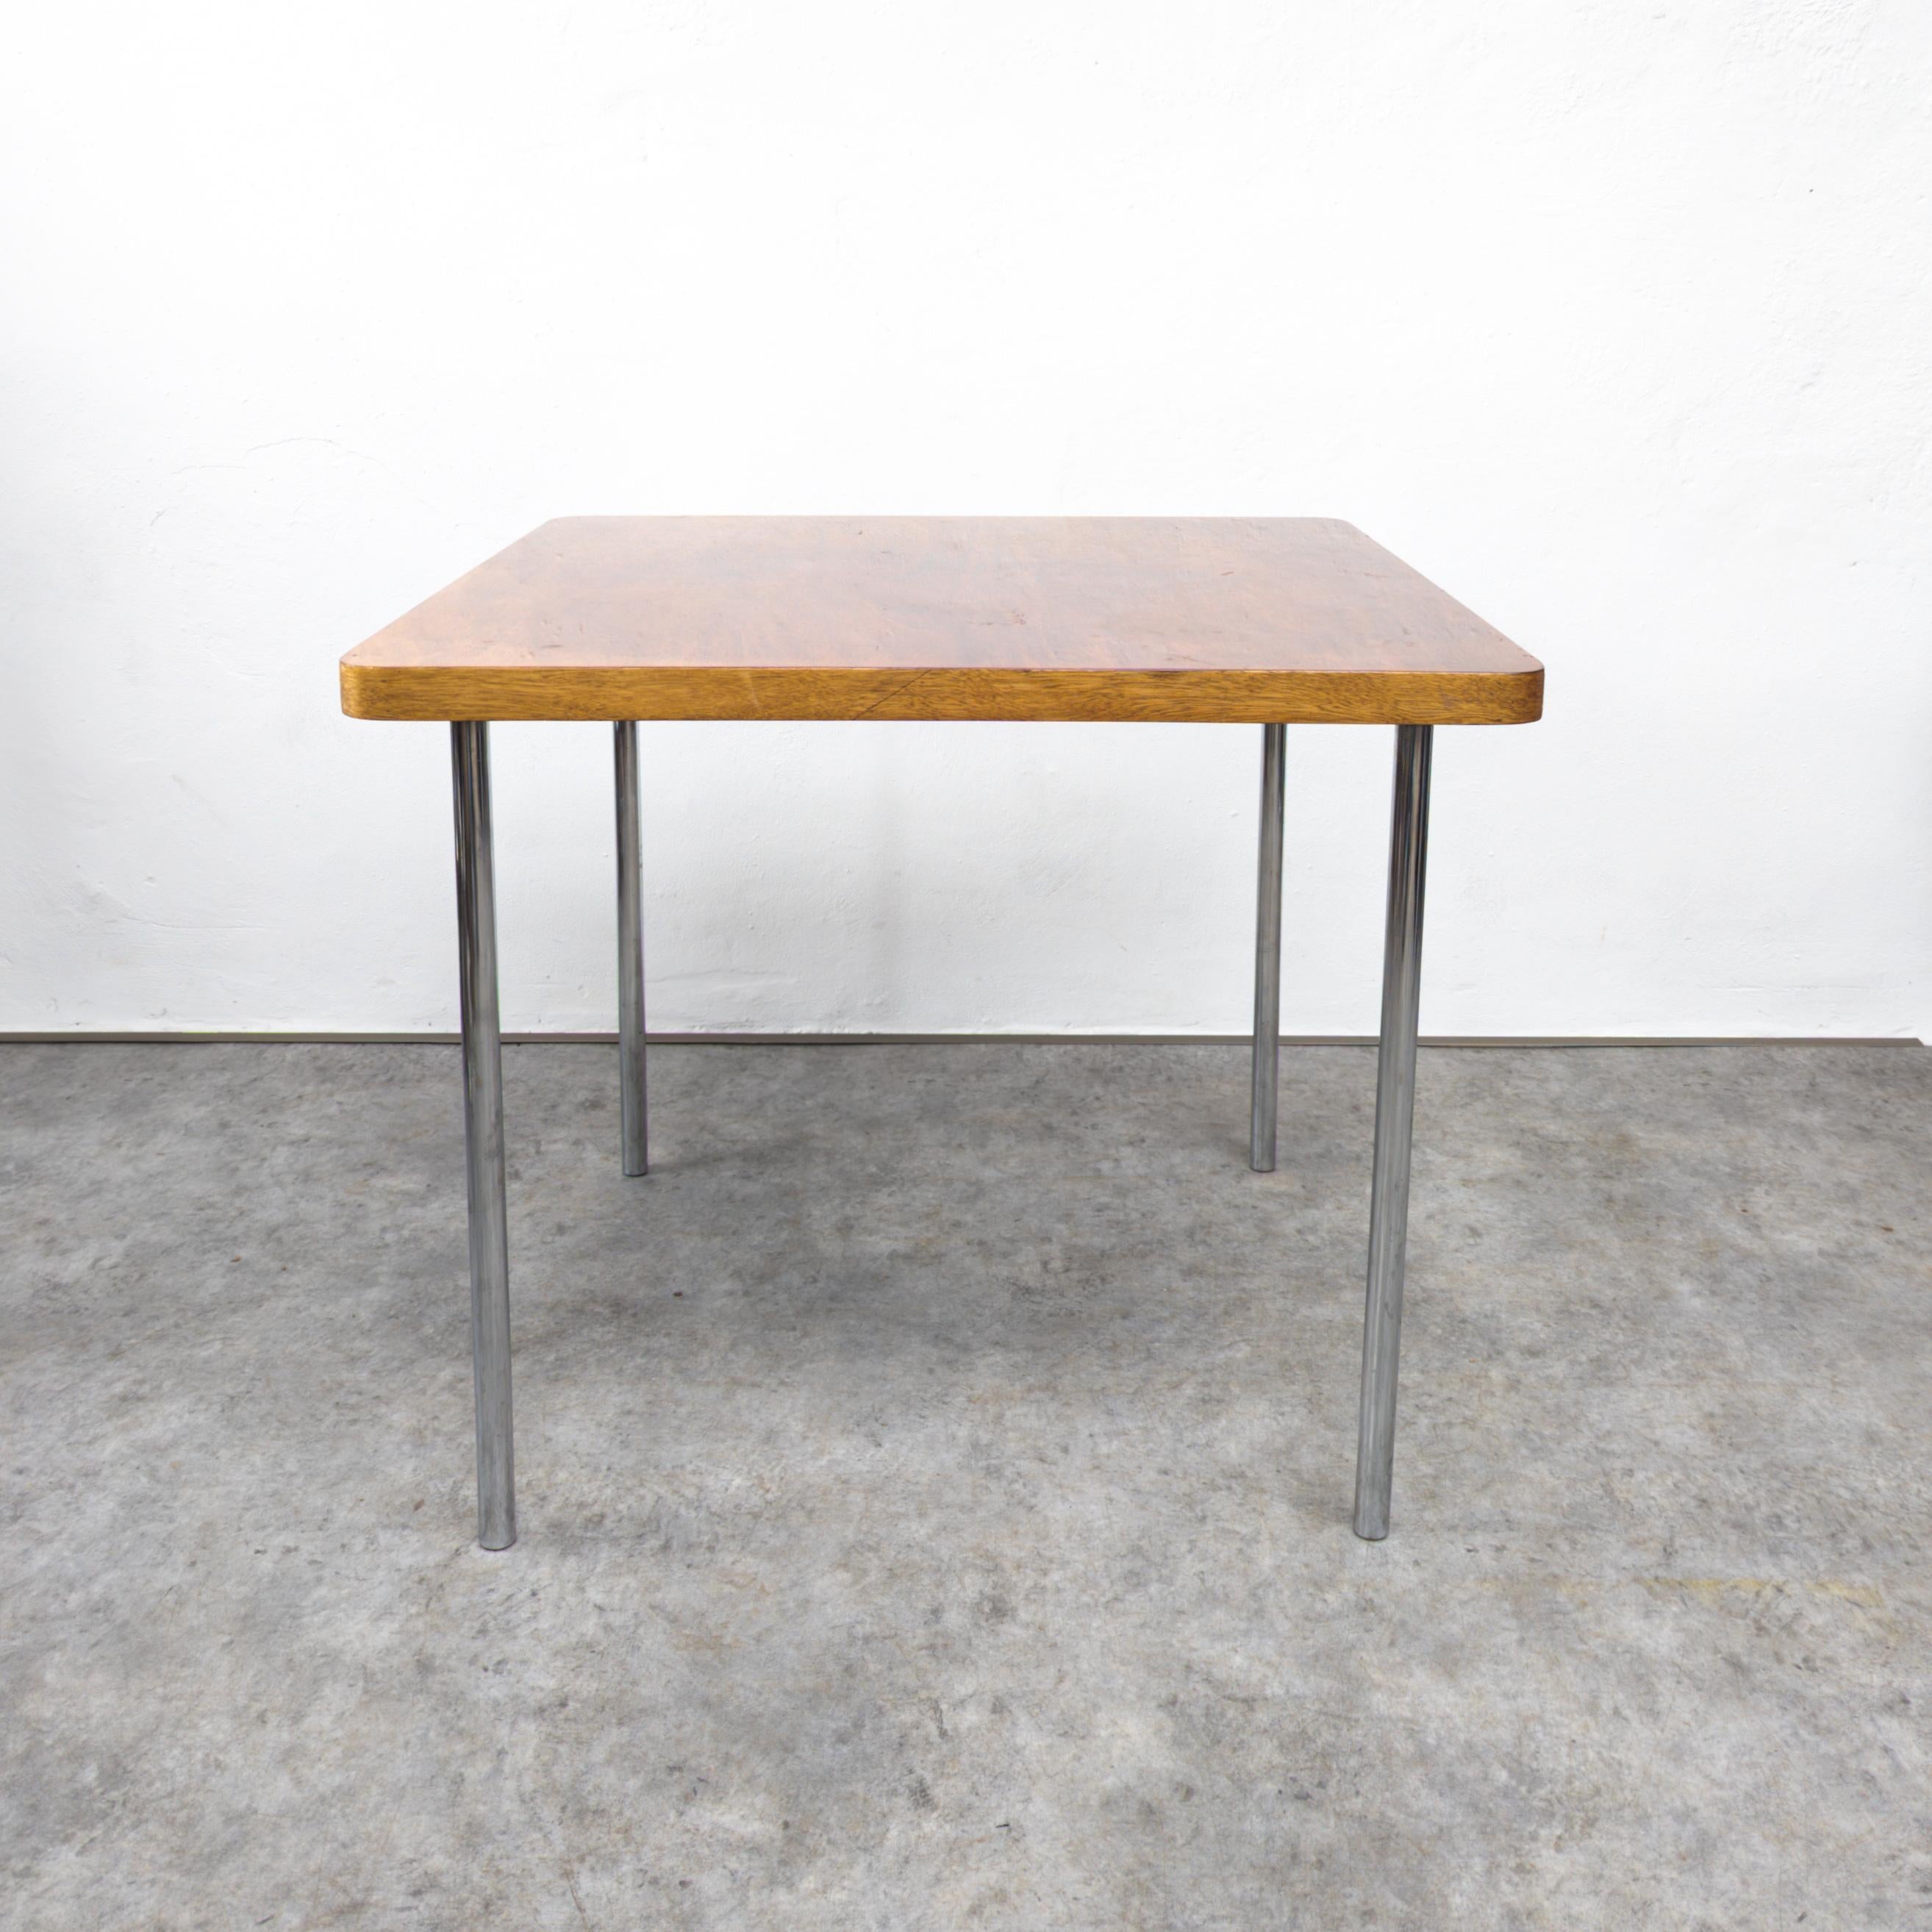 Der von Marcel Breuer entworfene Tisch Thonet B 14 ist ein klassisches Möbelstück, das für seine innovative Verwendung von Stahlrohr und geometrischen Formen bekannt ist. Die quadratische Holzplatte wird von geraden, verchromten Stahlbeinen